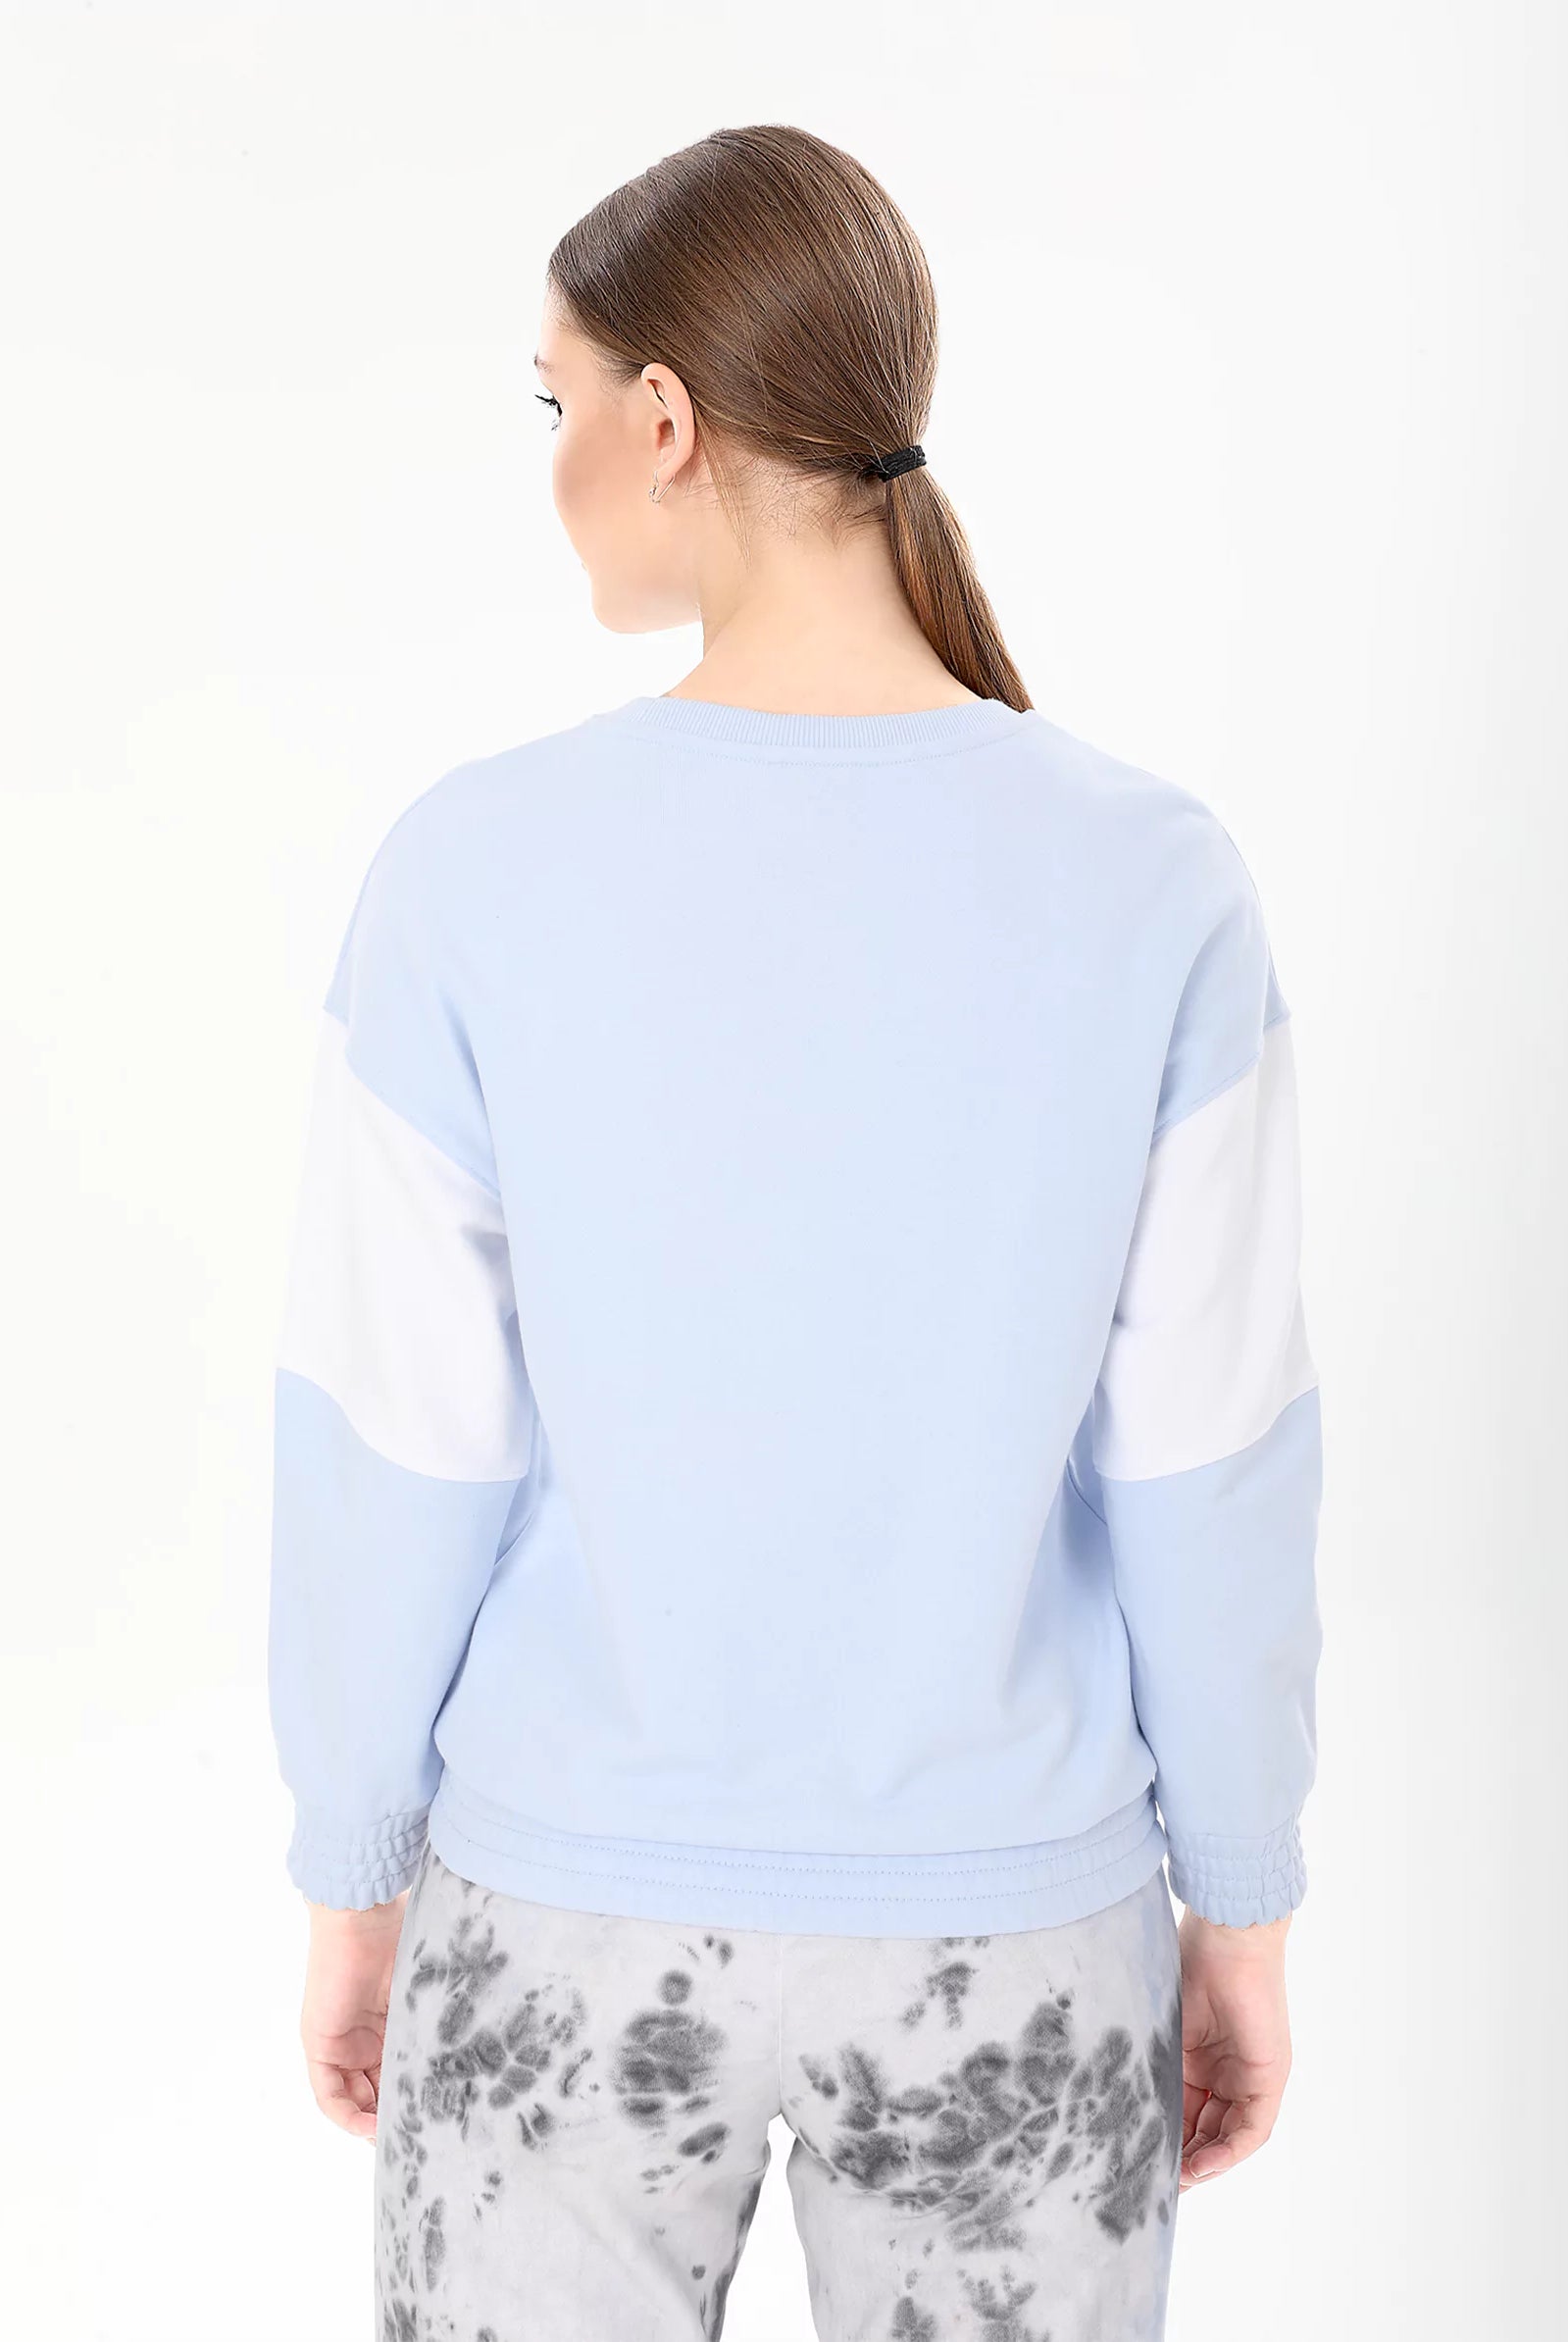 buy light blue sweatshirt uk